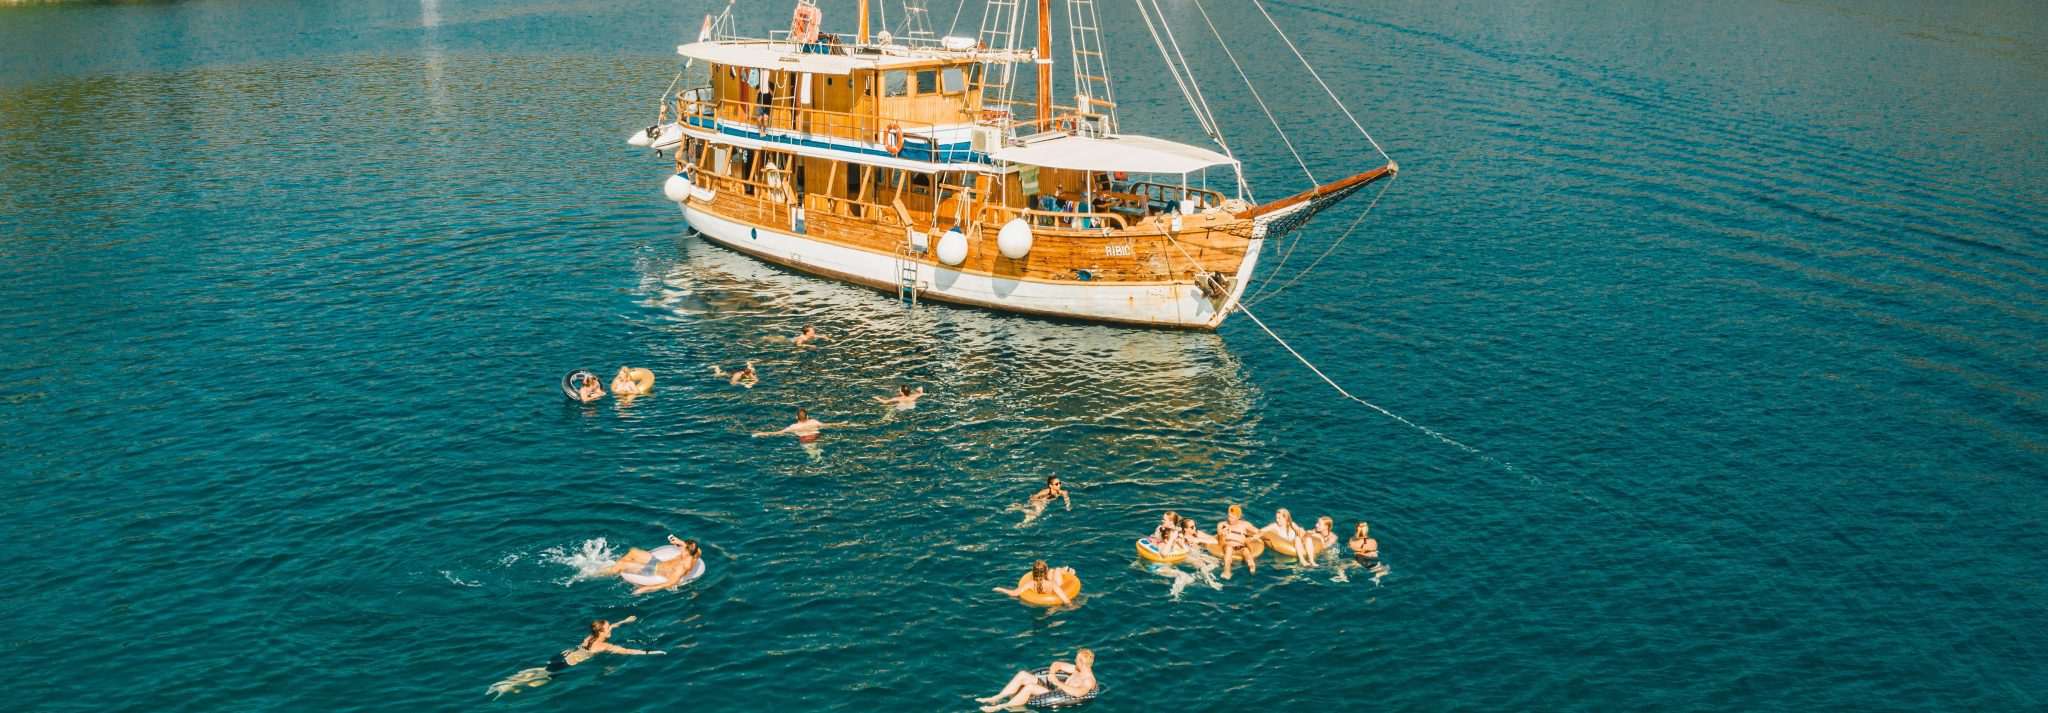 9 Reasons You Should Book a Sailing Holiday